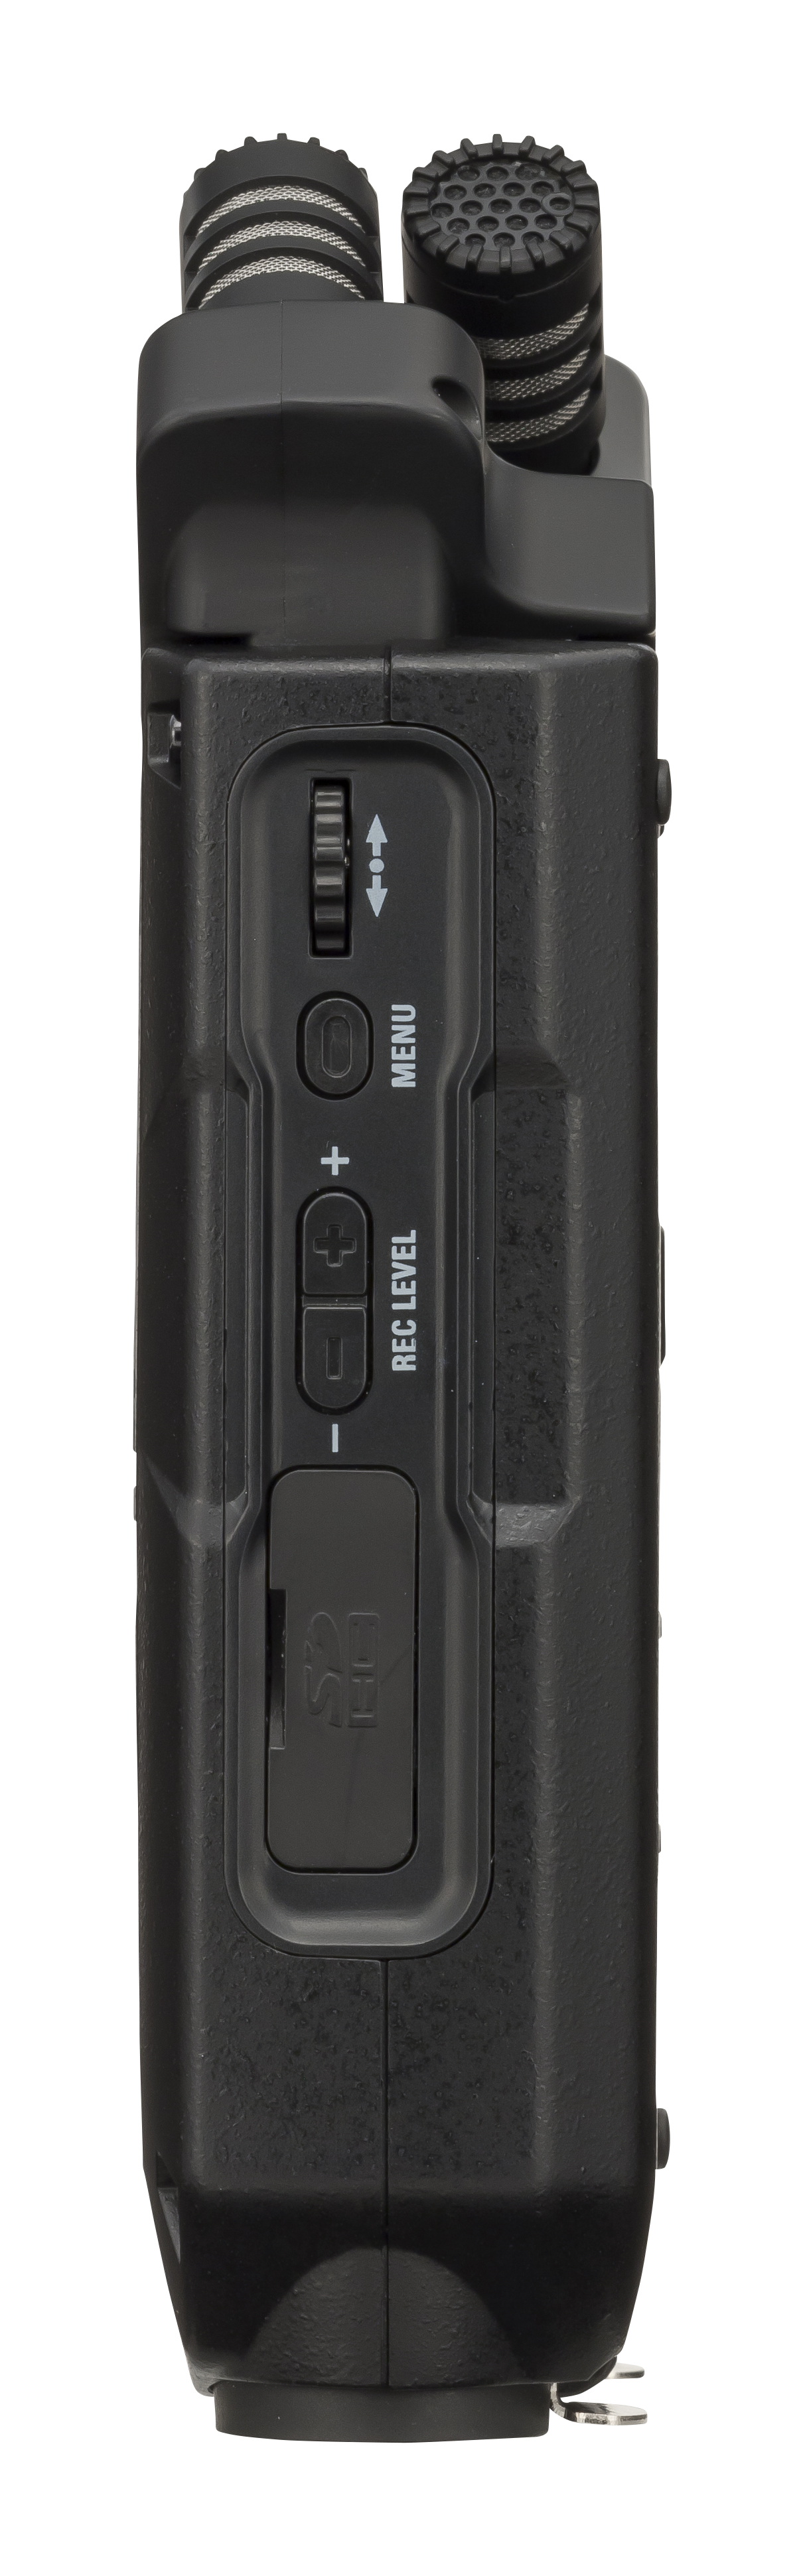 Zoom H4n Pro Black + Pack Accessoires - Mobiele opnemer - Variation 3